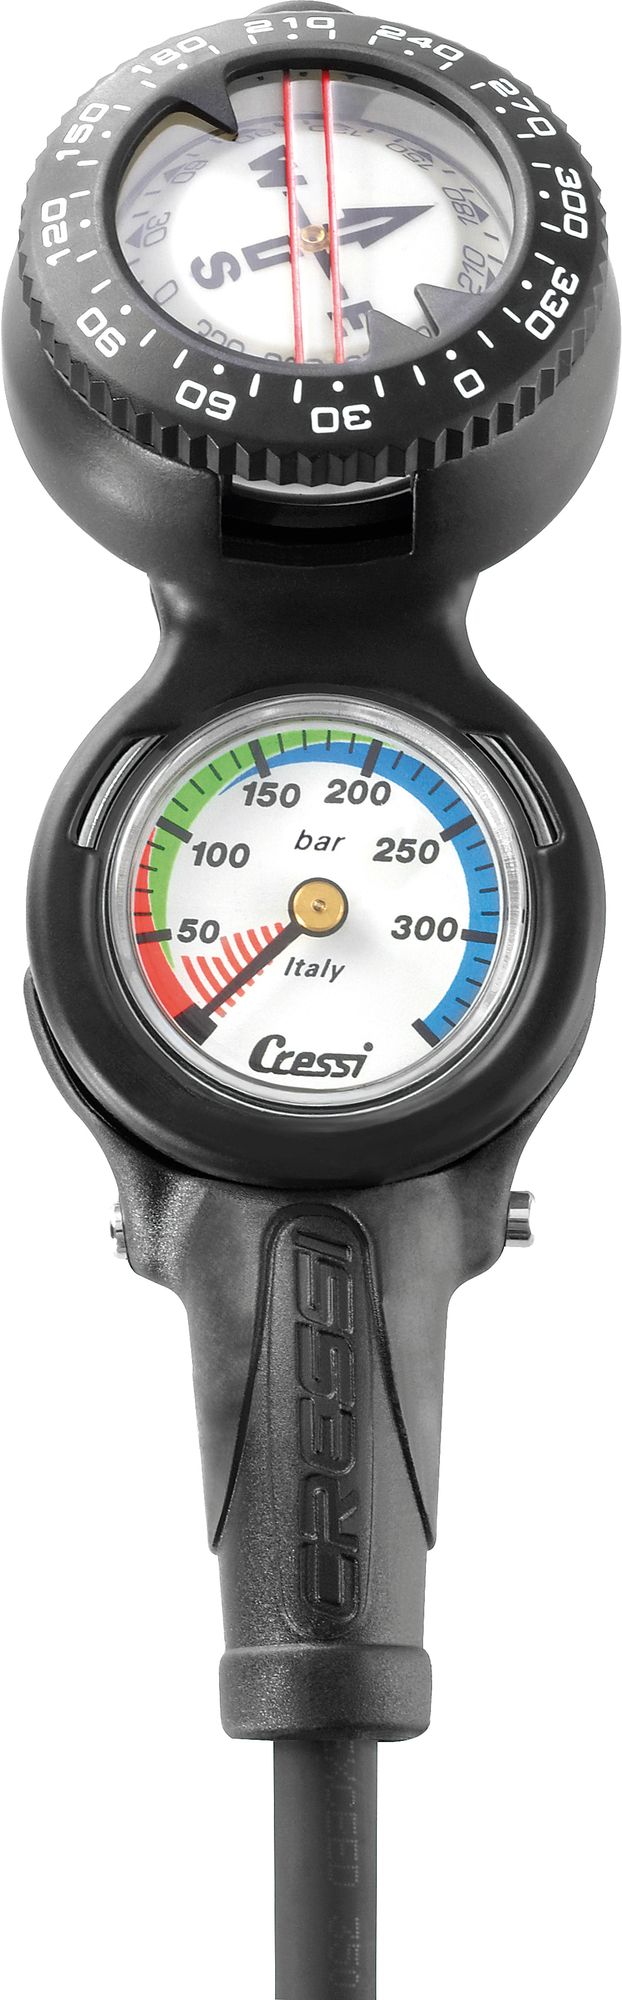 Cressi Cp2 Console console immersion subacque bussola manometro pressione scuba diving gauge compass + pressure console analogic